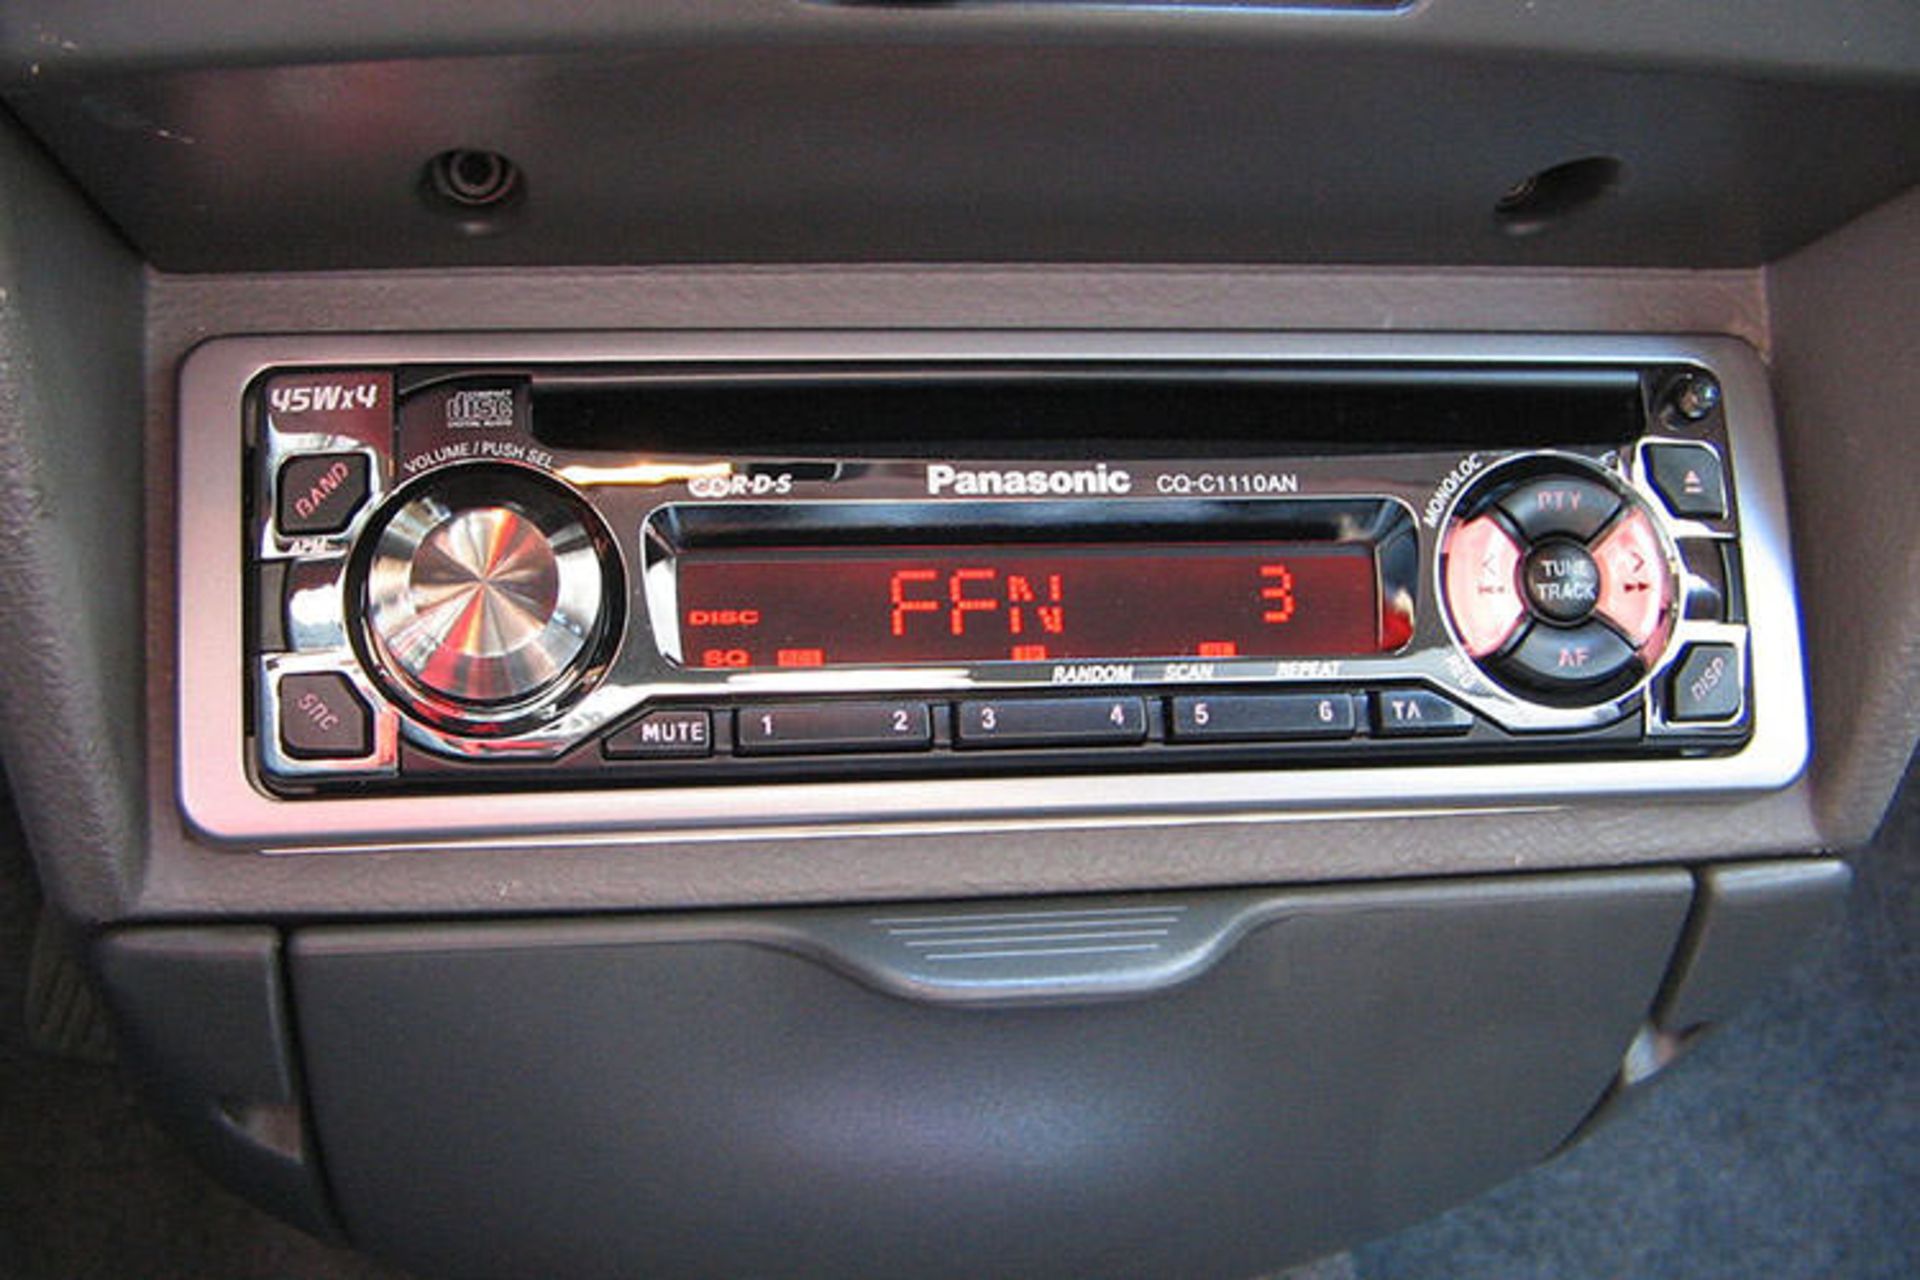 مرجع متخصصين ايران car audio system / سيستم صوتي خودرو